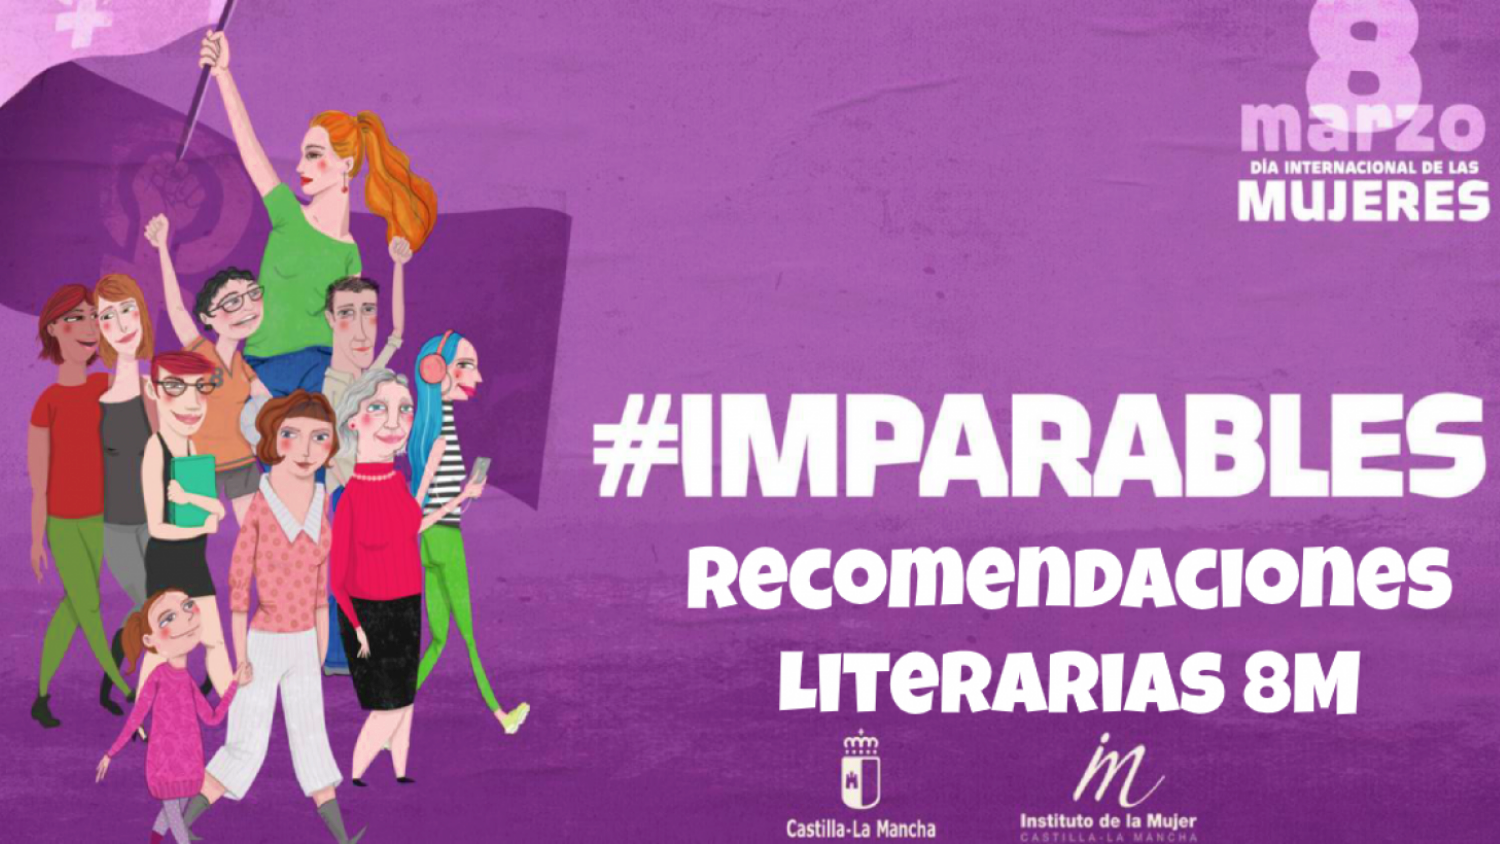 El Instituto De La Mujer De Castilla La Mancha Lanza Un Boletín Con Recomendaciones Literarias 4172